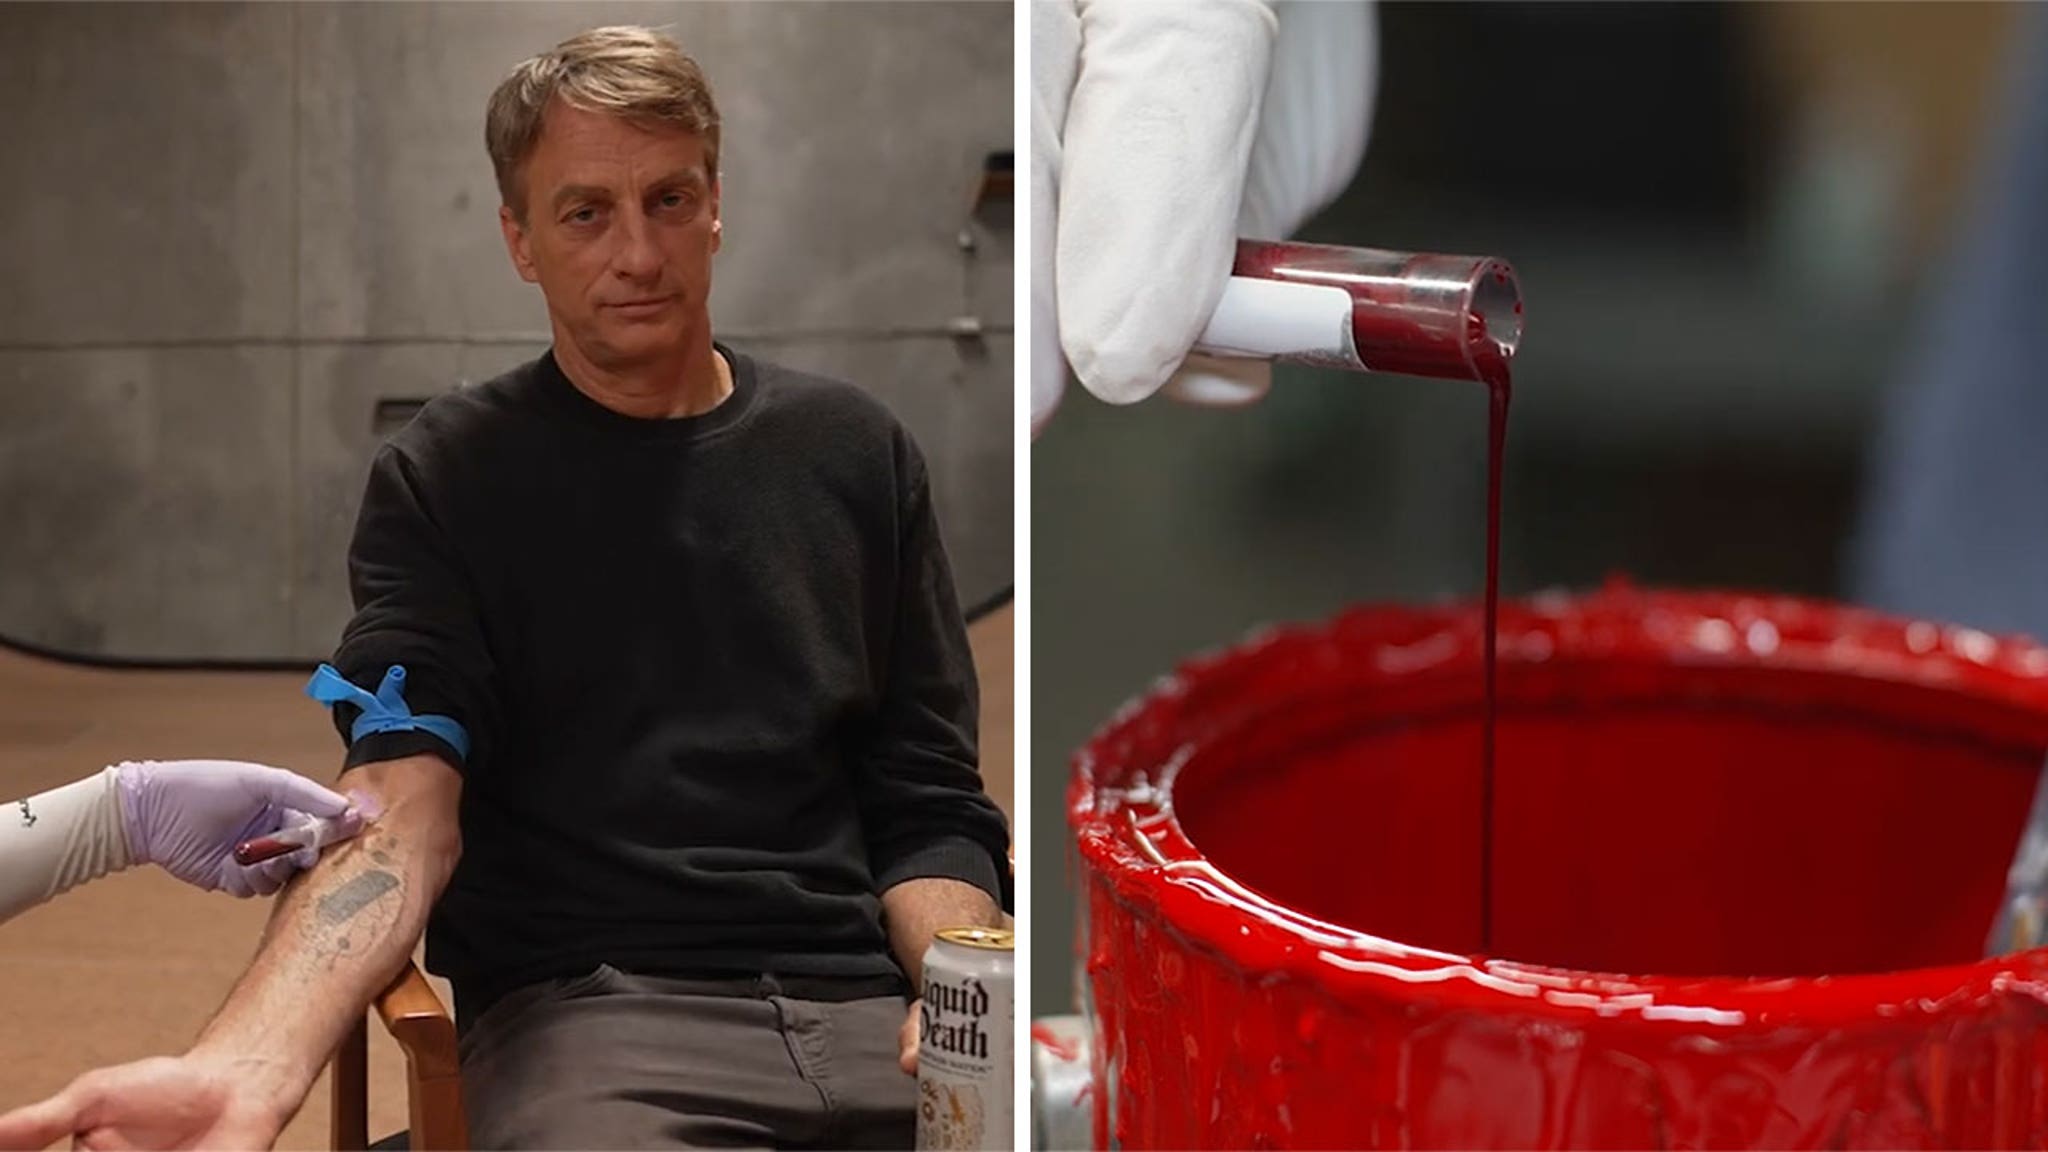 Tony Hawk, Liquid Death team up to sell blood-infused skateboard decks